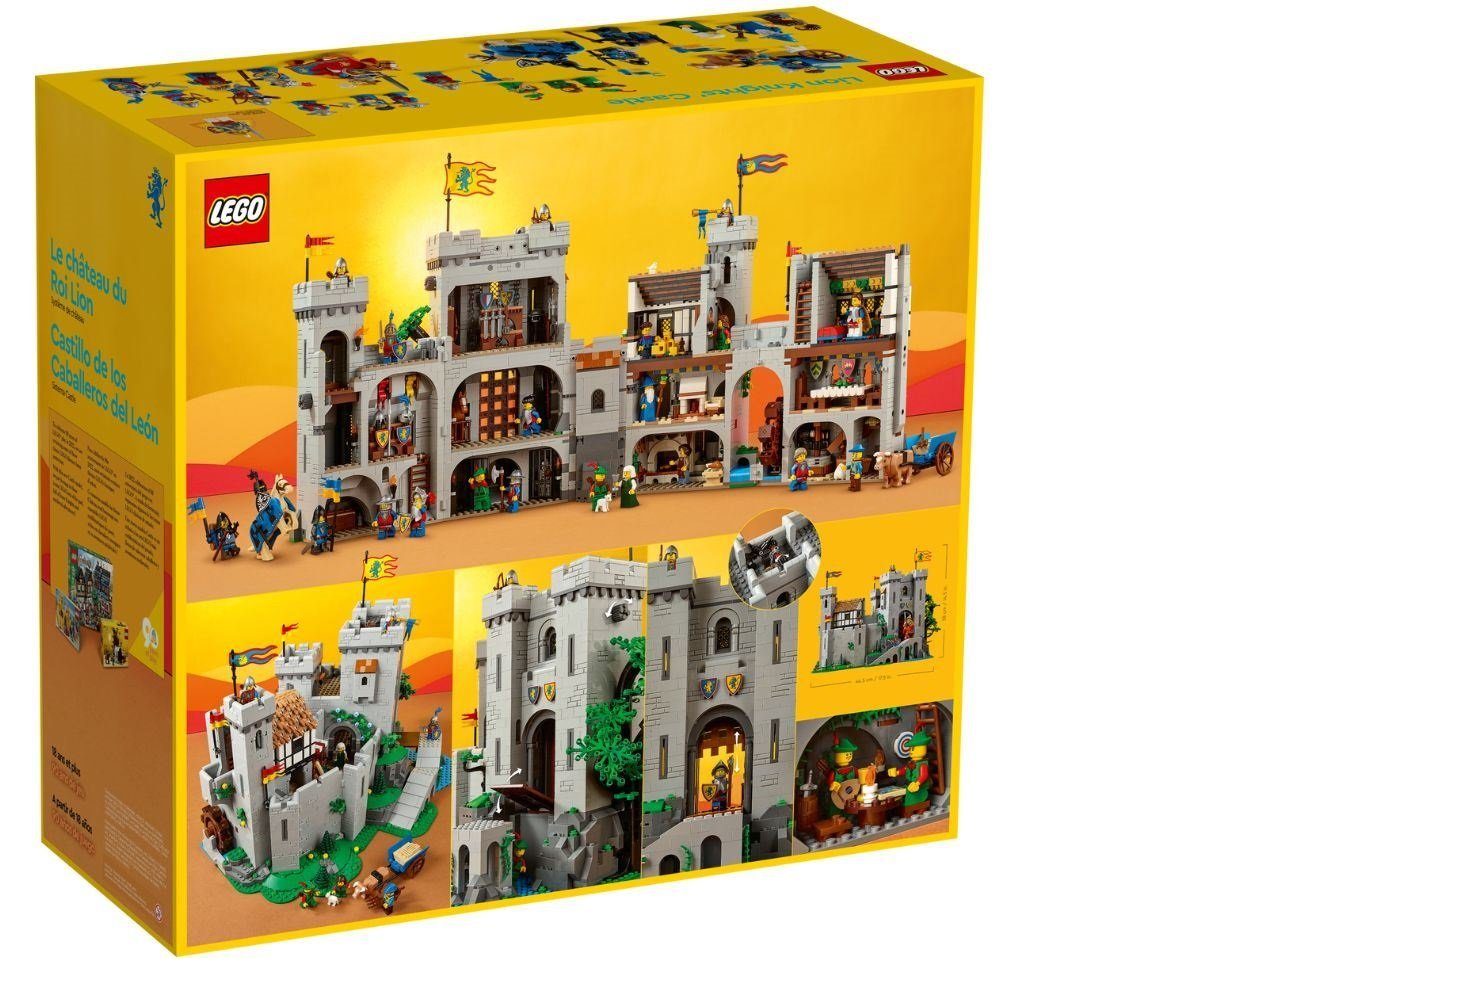 LEGO® Spielbausteine Icons der Burg 10305 St) 10305, Löwenritter (4514